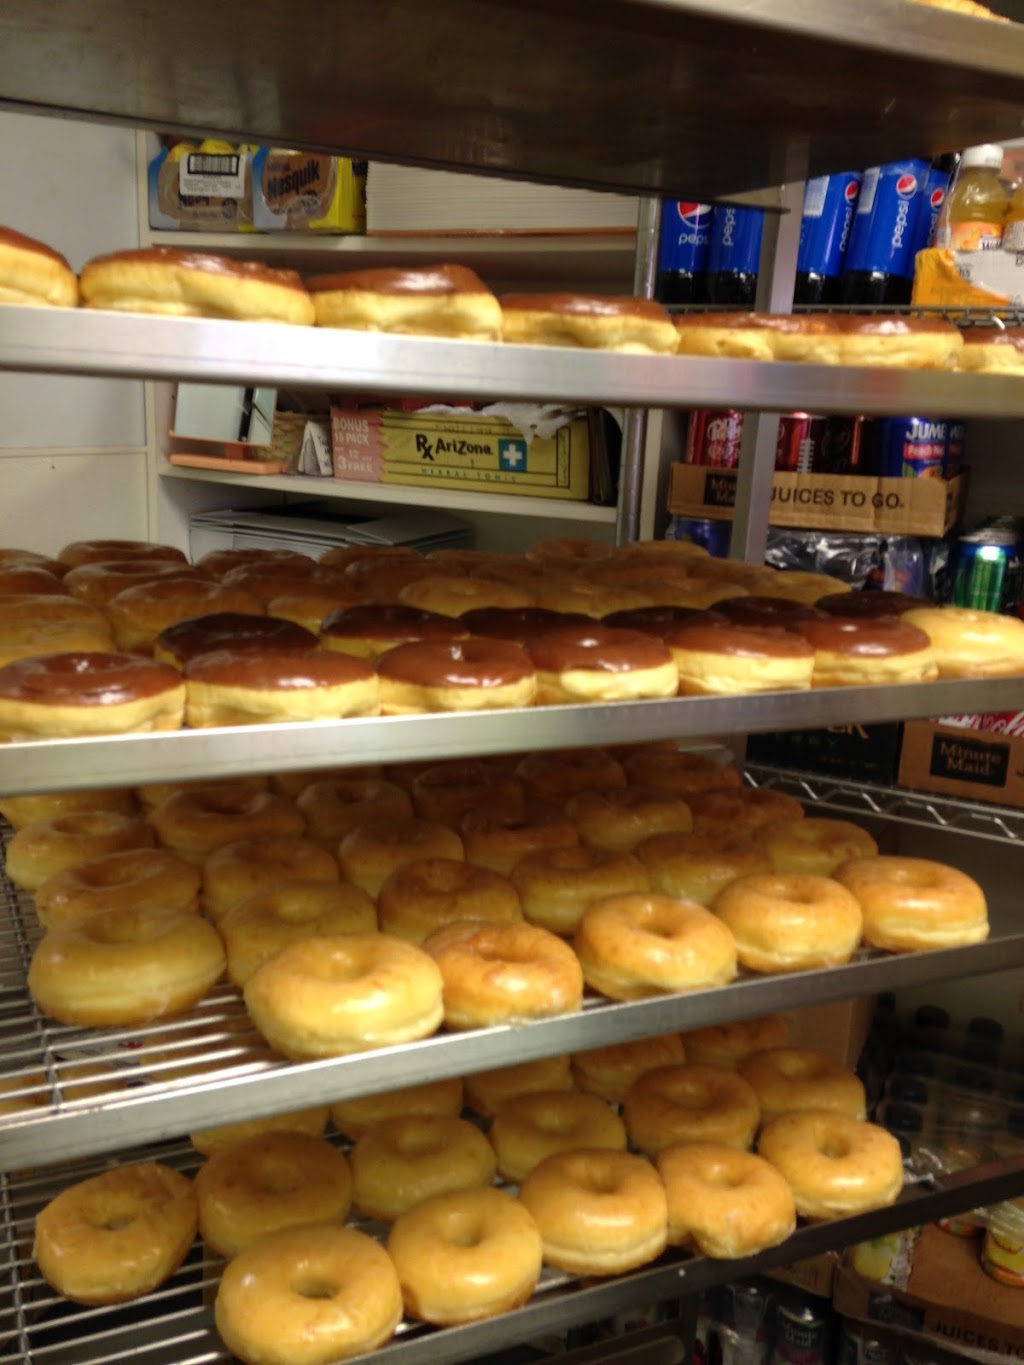 Hot Donuts & Bakery | 12915 Jupiter Rd, Dallas, TX 75238, USA | Phone: (214) 343-9664